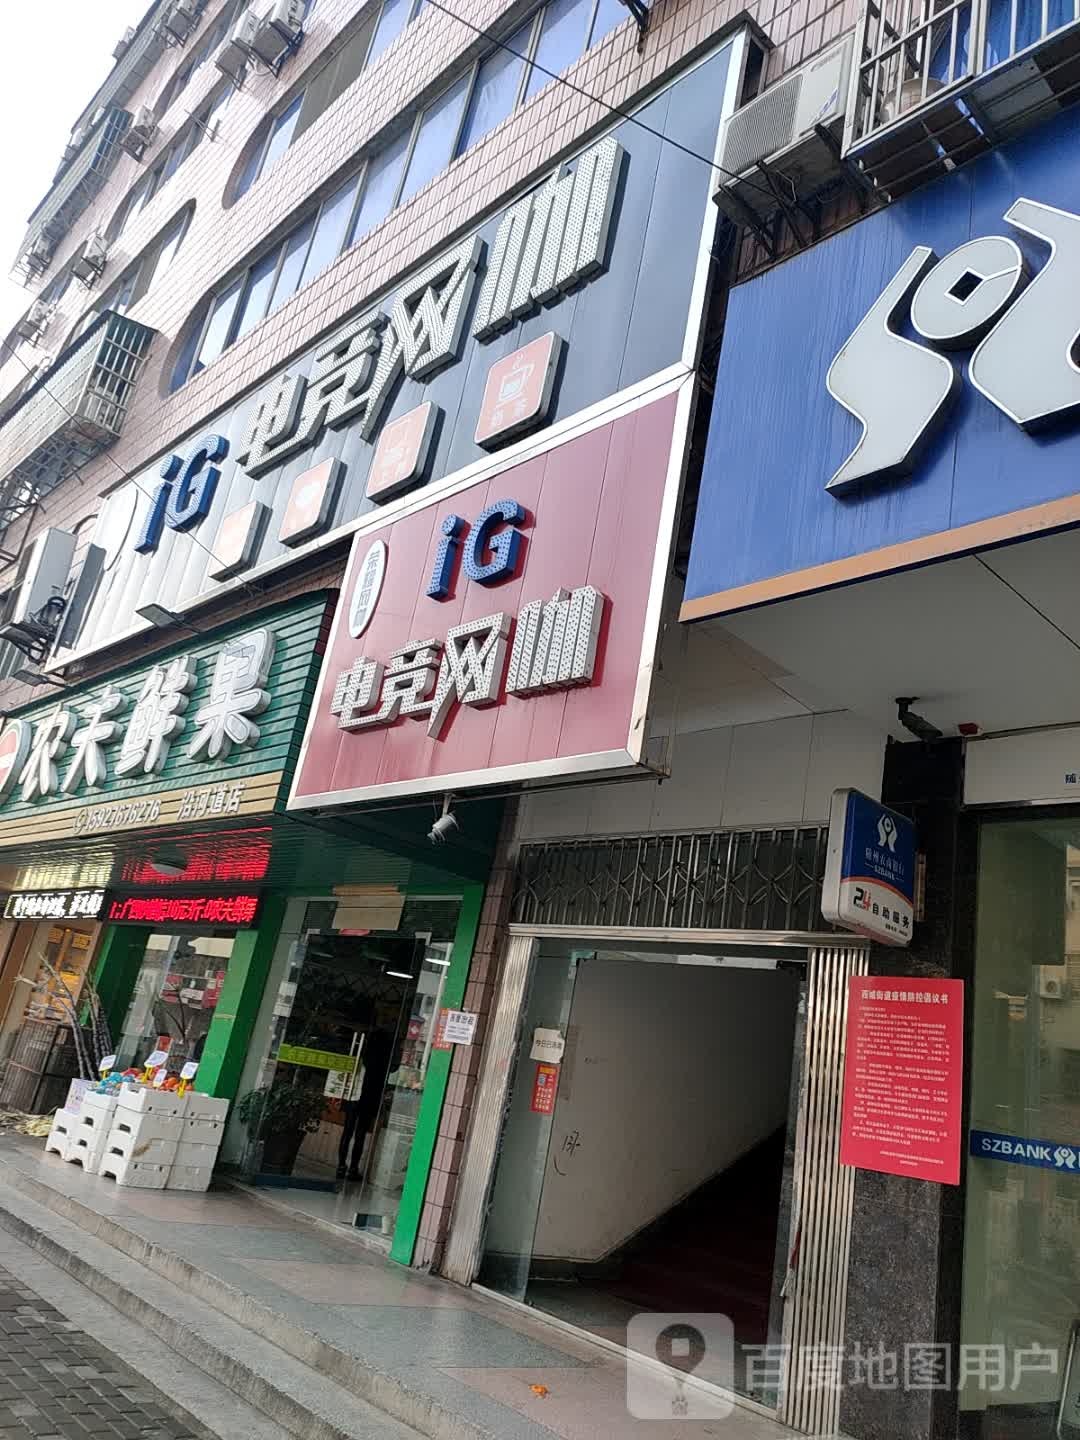 IG电竞网咖(青年路店)